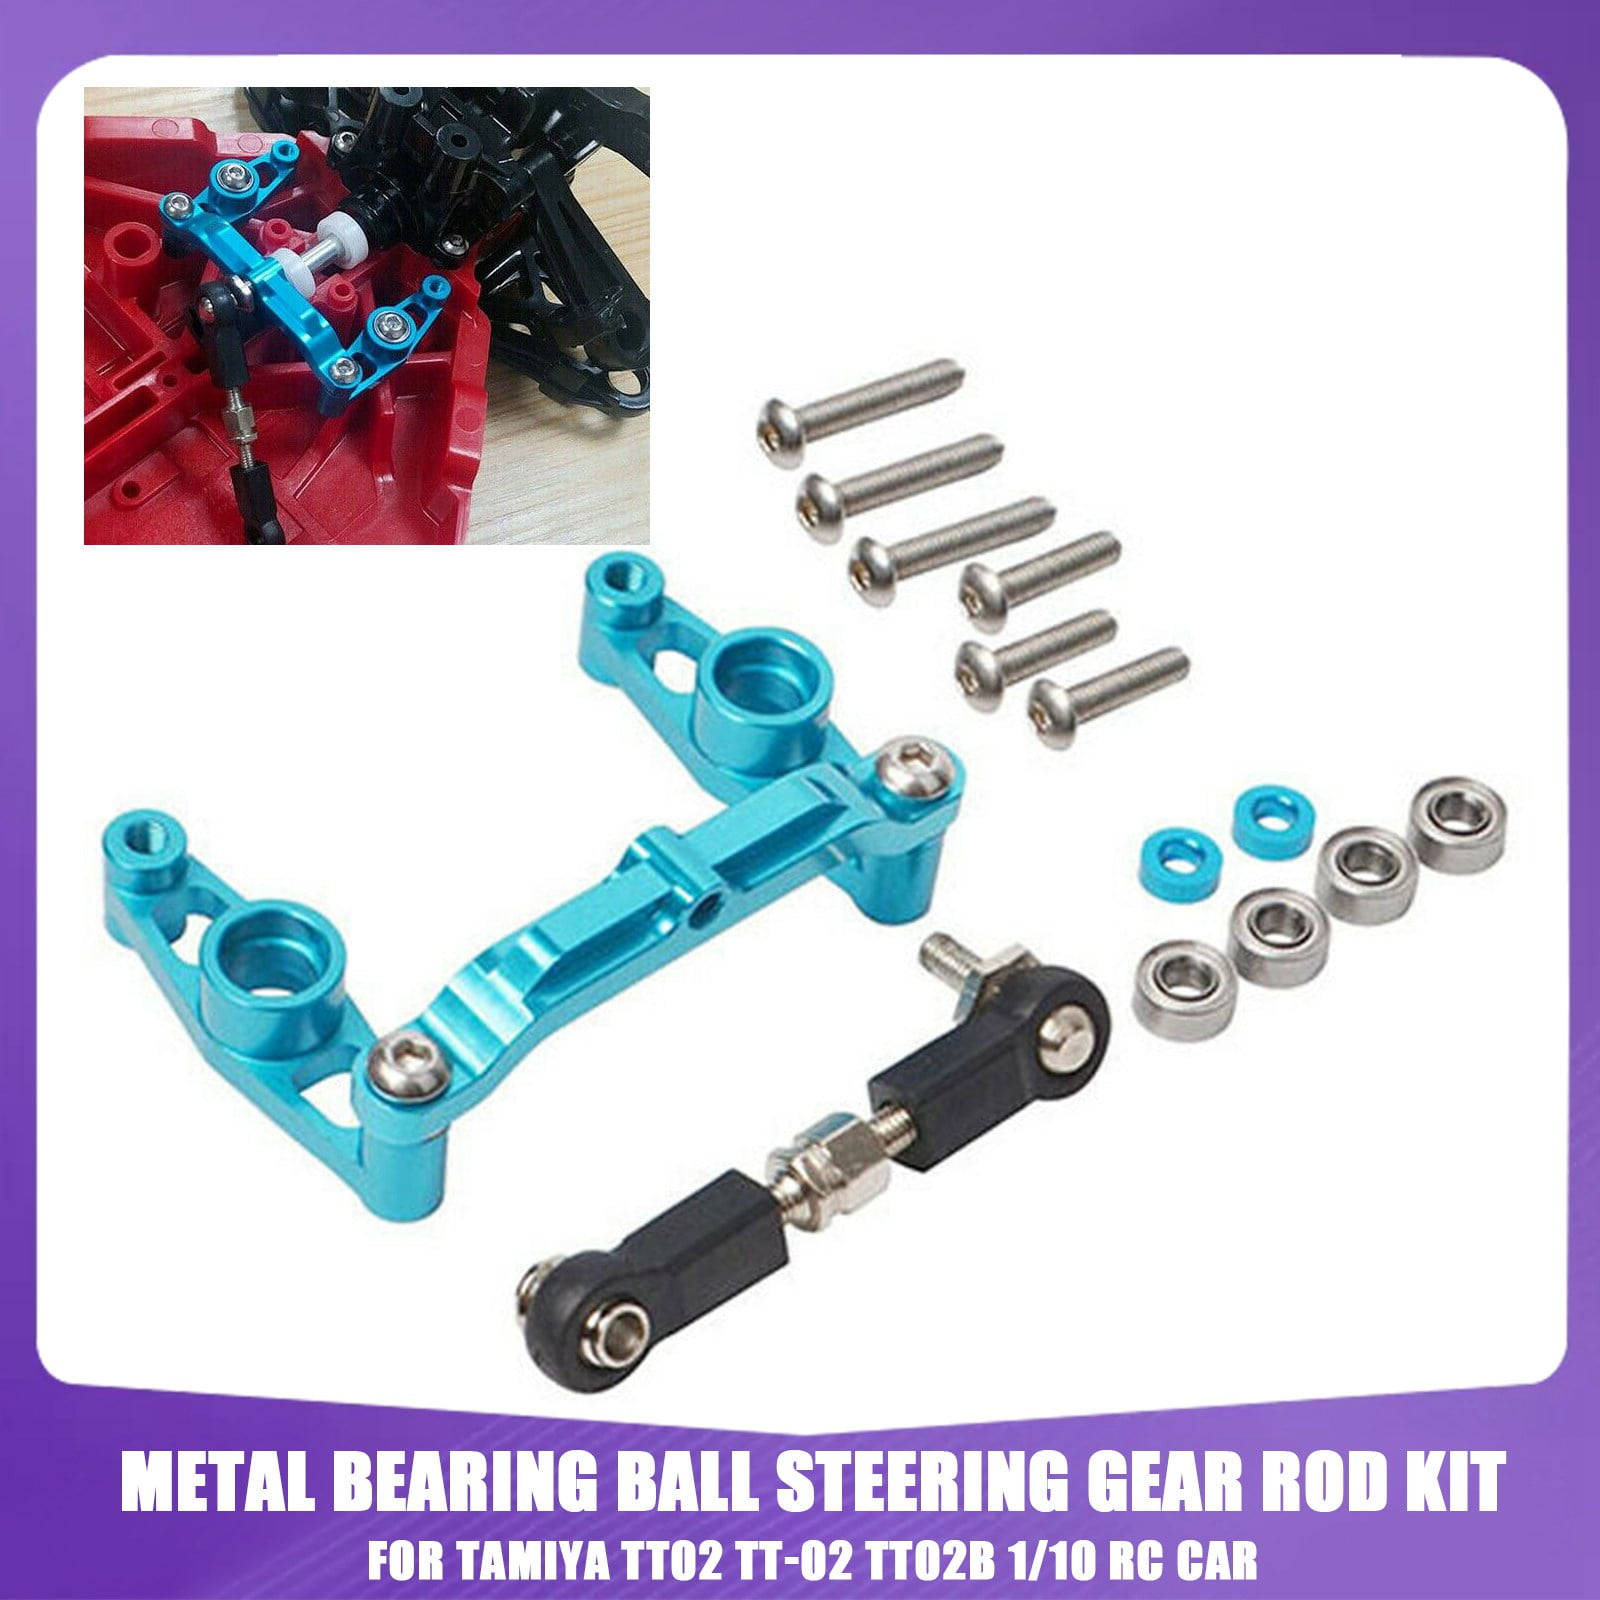 Metal Bearing Ball Steering Gear Rod Kit for Tamiya TT02 TT-02 TT02B 1/10 RC Car